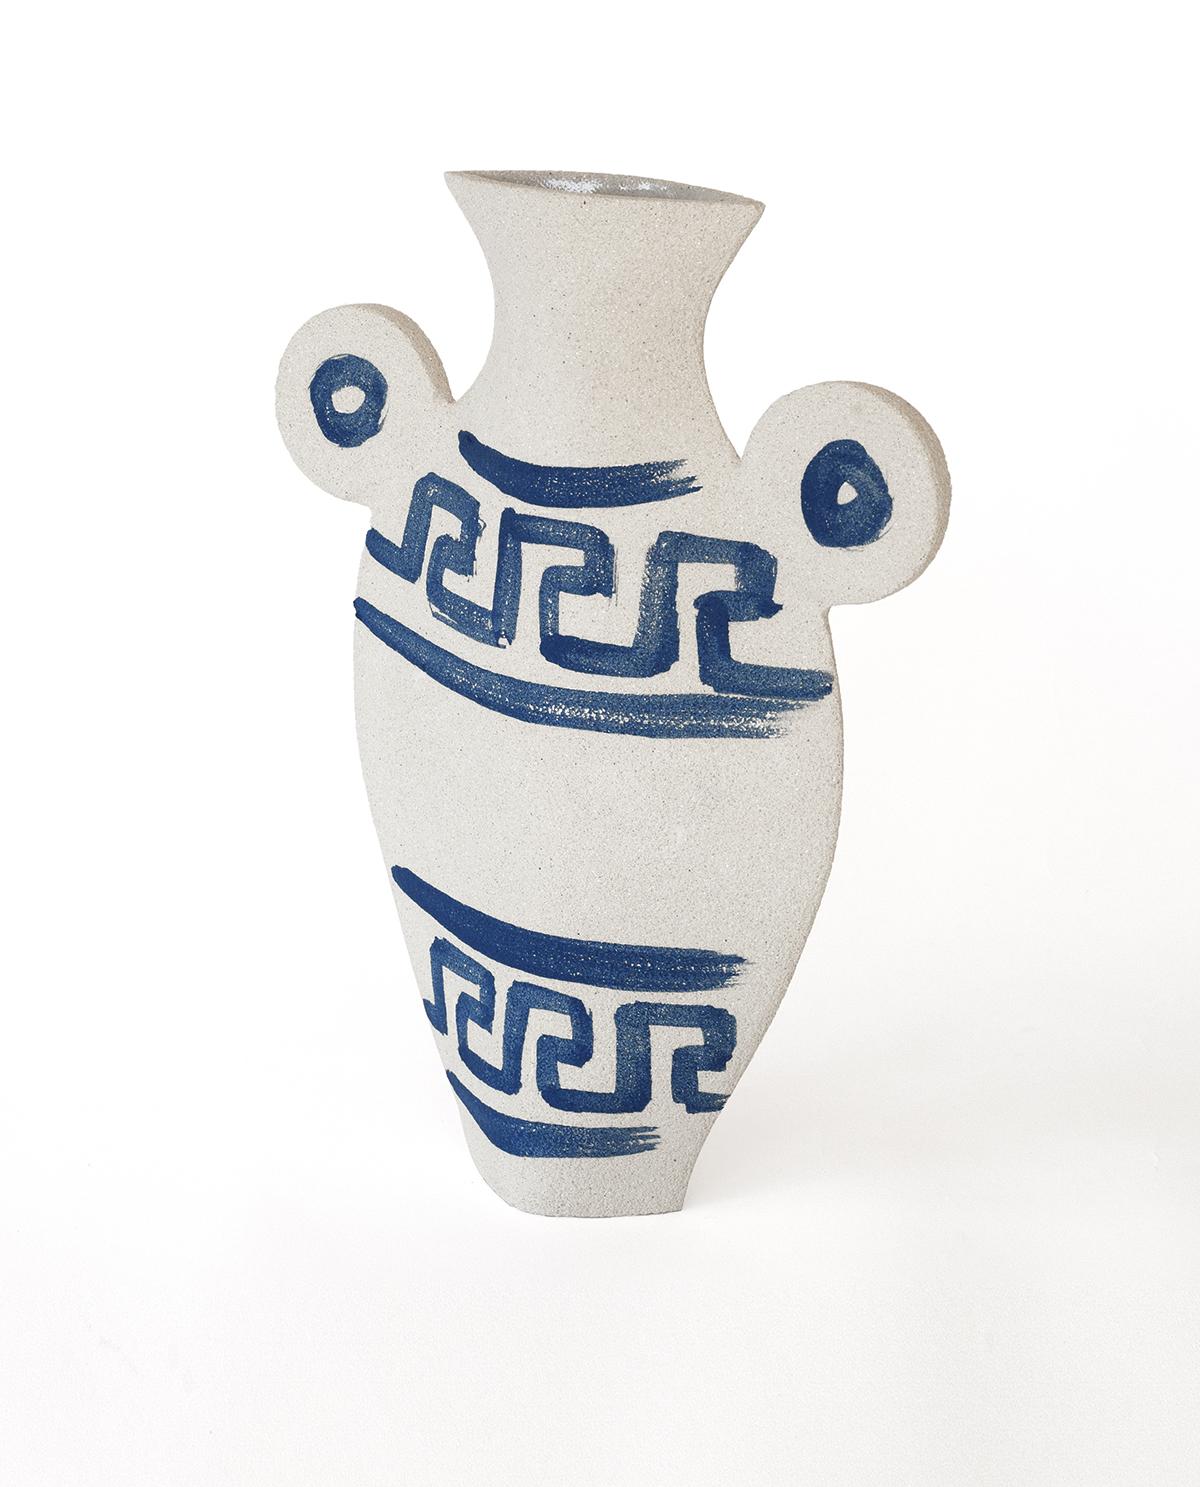 Faisant partie d'un triptyque captivant mêlant la poterie grecque ancienne au design contemporain, le vase 